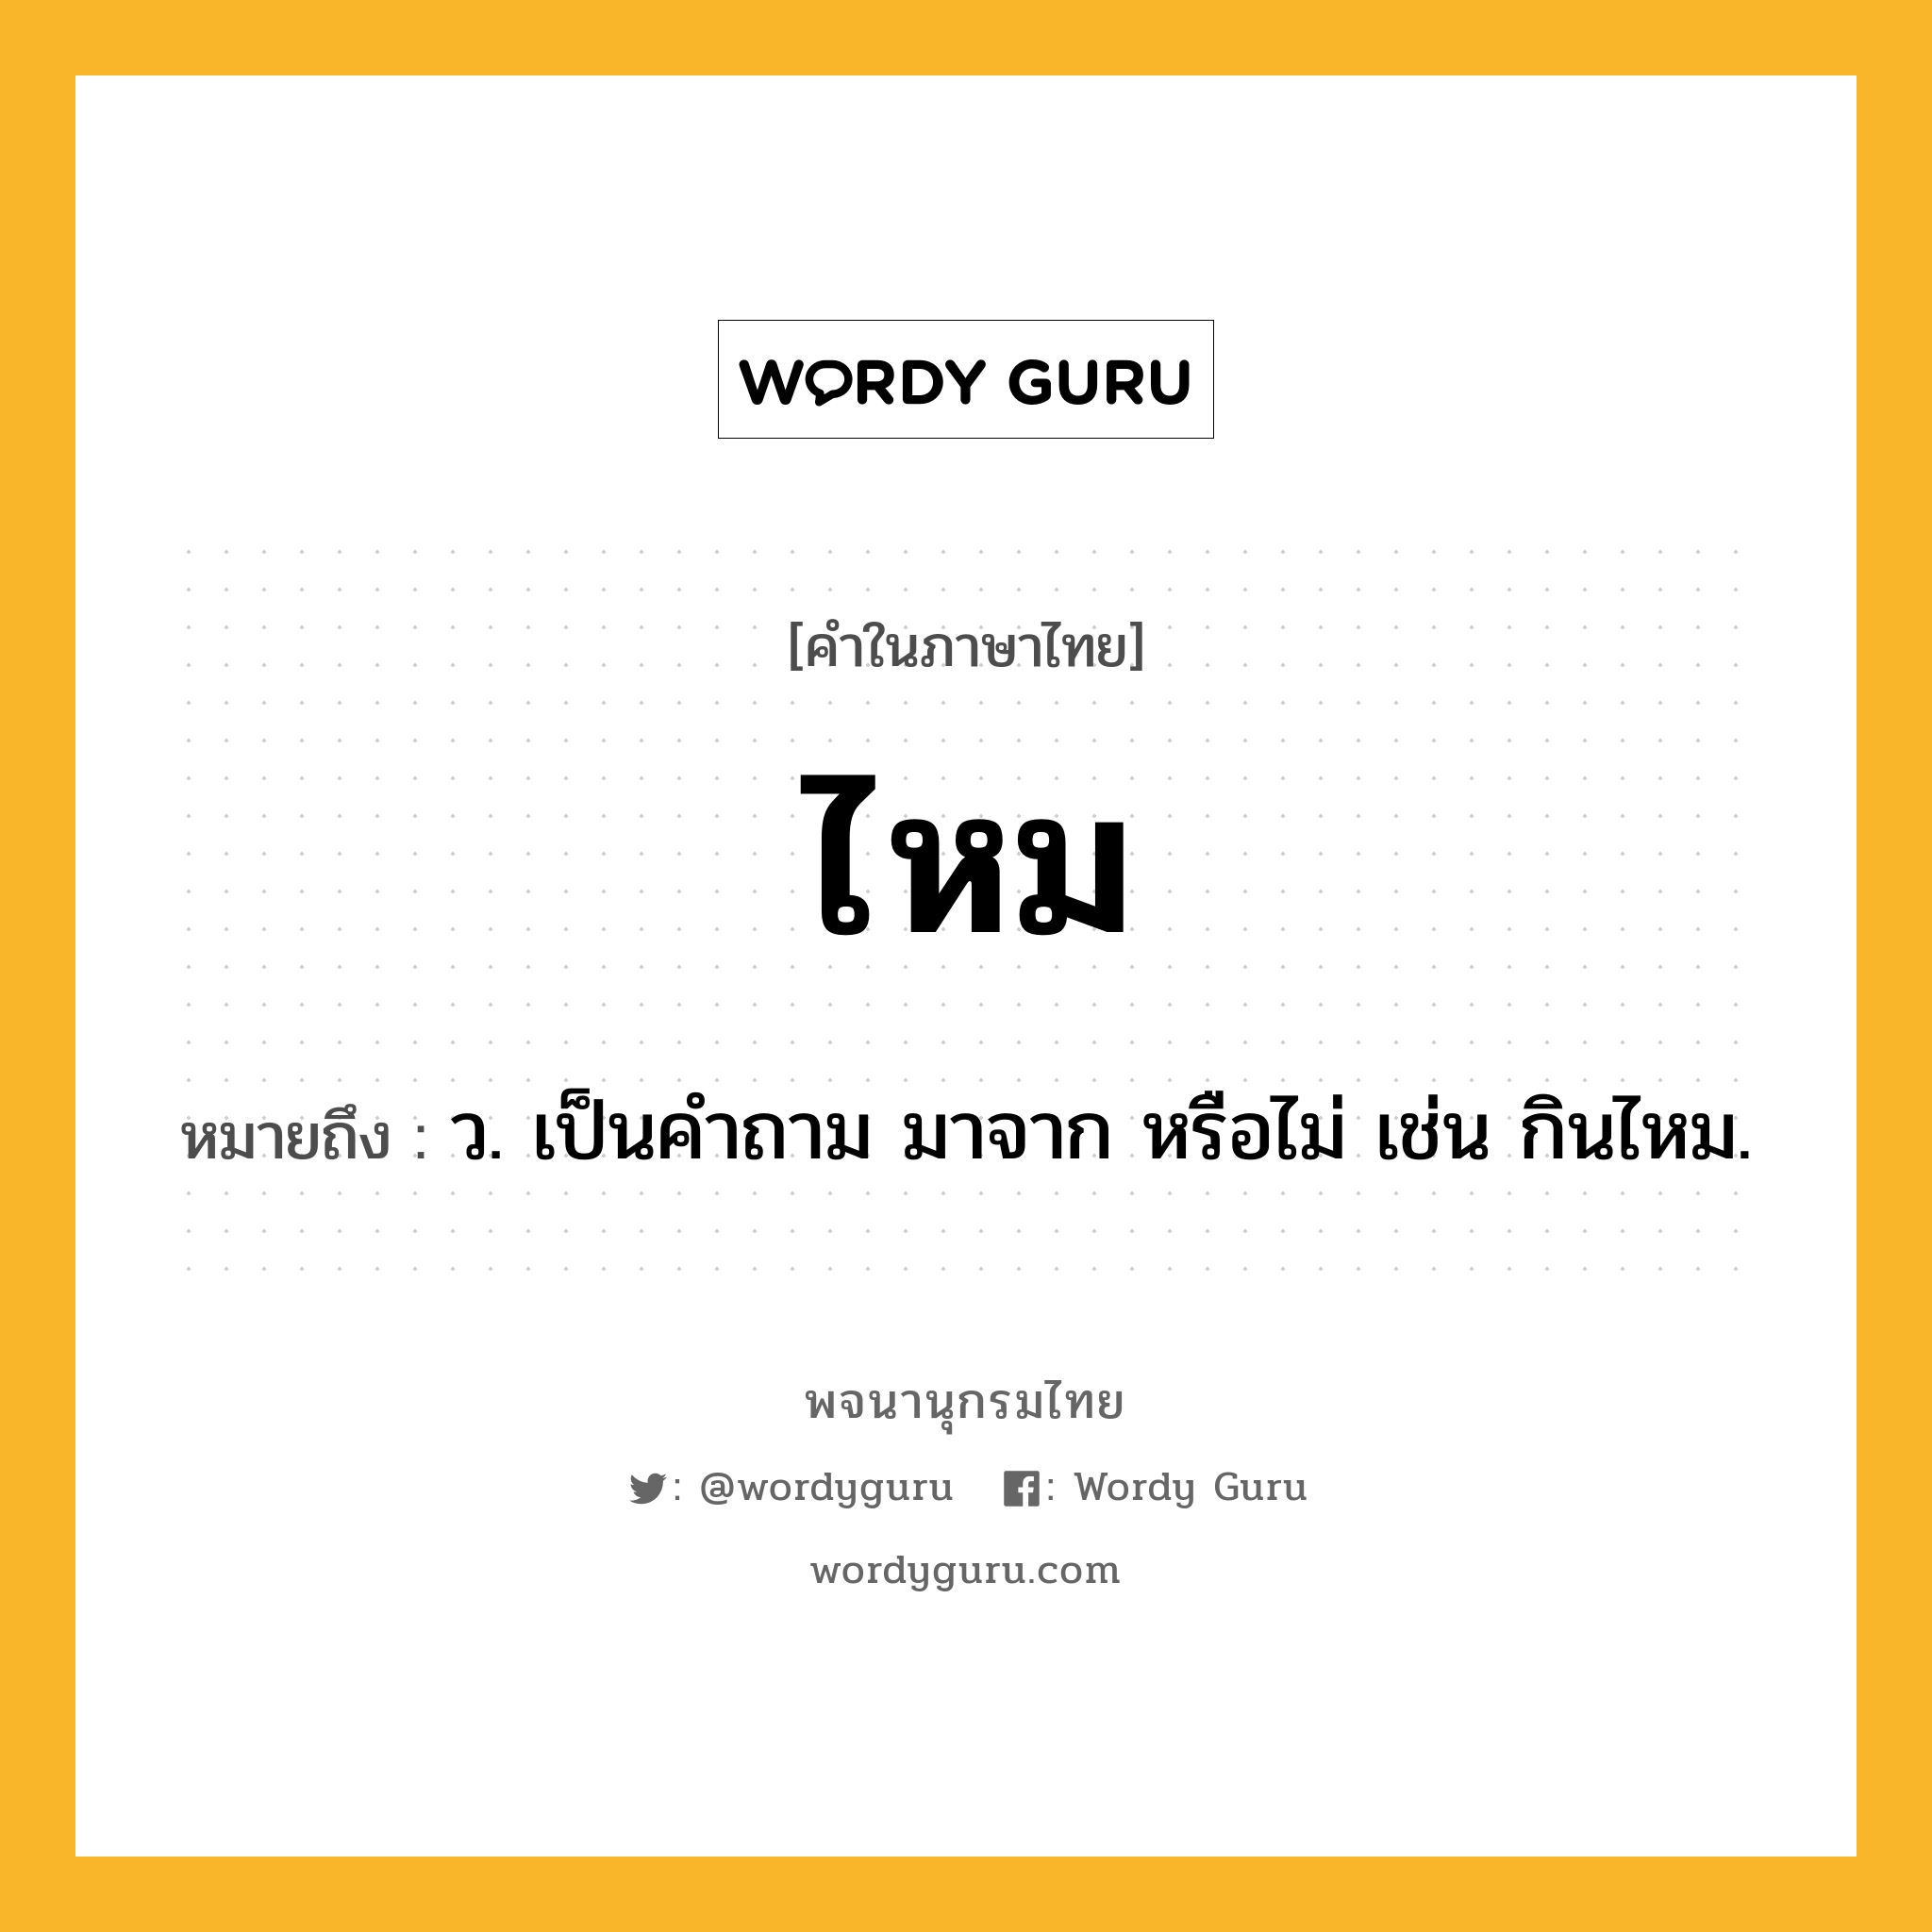 ไหม ความหมาย หมายถึงอะไร?, คำในภาษาไทย ไหม หมายถึง ว. เป็นคําถาม มาจาก หรือไม่ เช่น กินไหม.